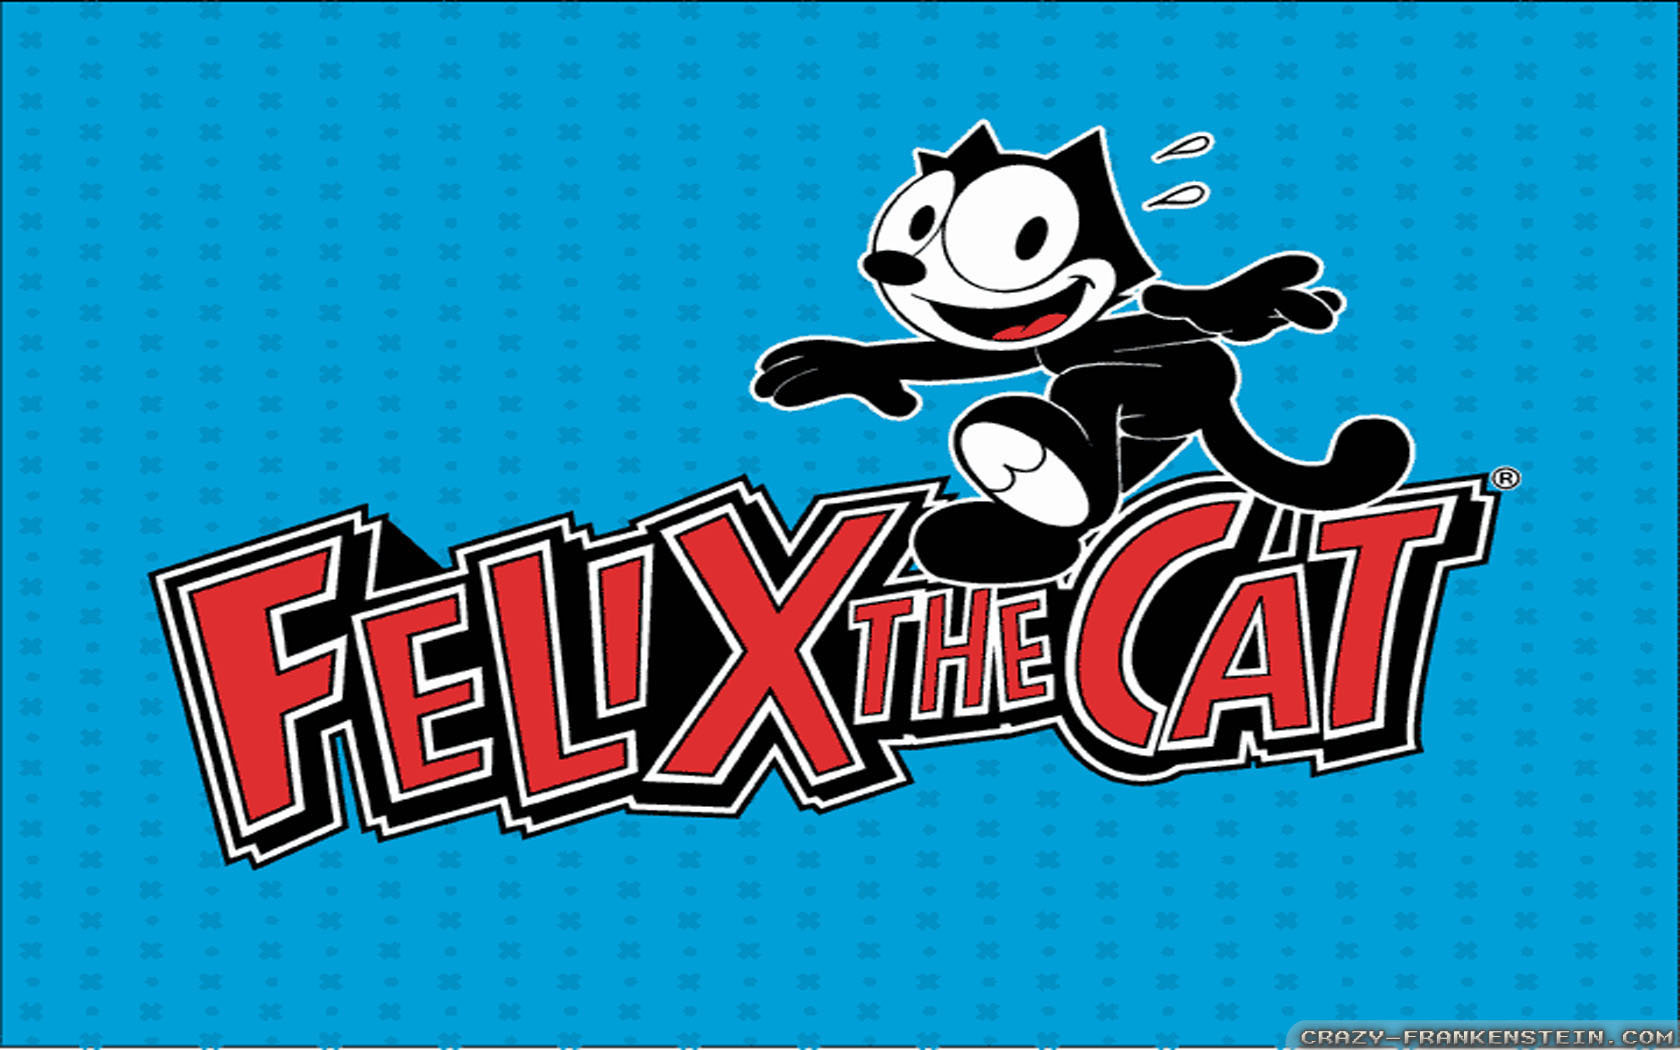 Felix the cat desktop download